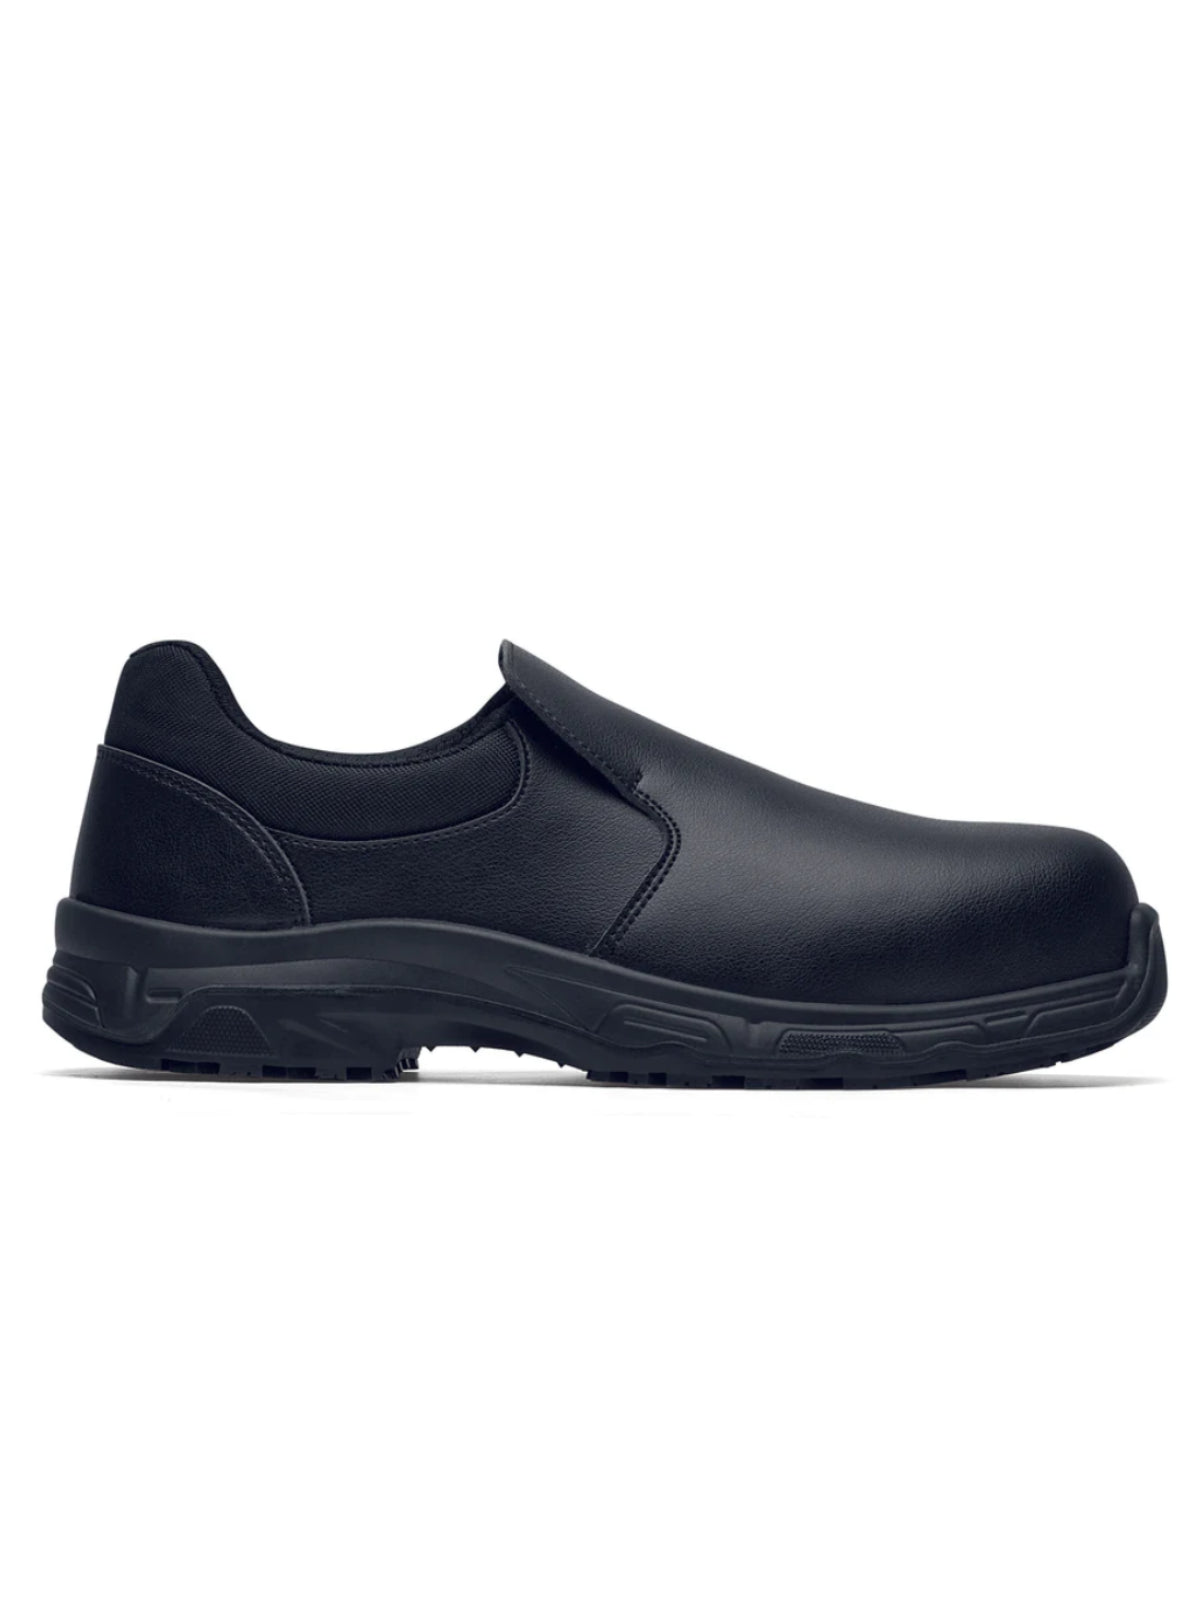 Unisex Safety Shoe Catania Black (S3)